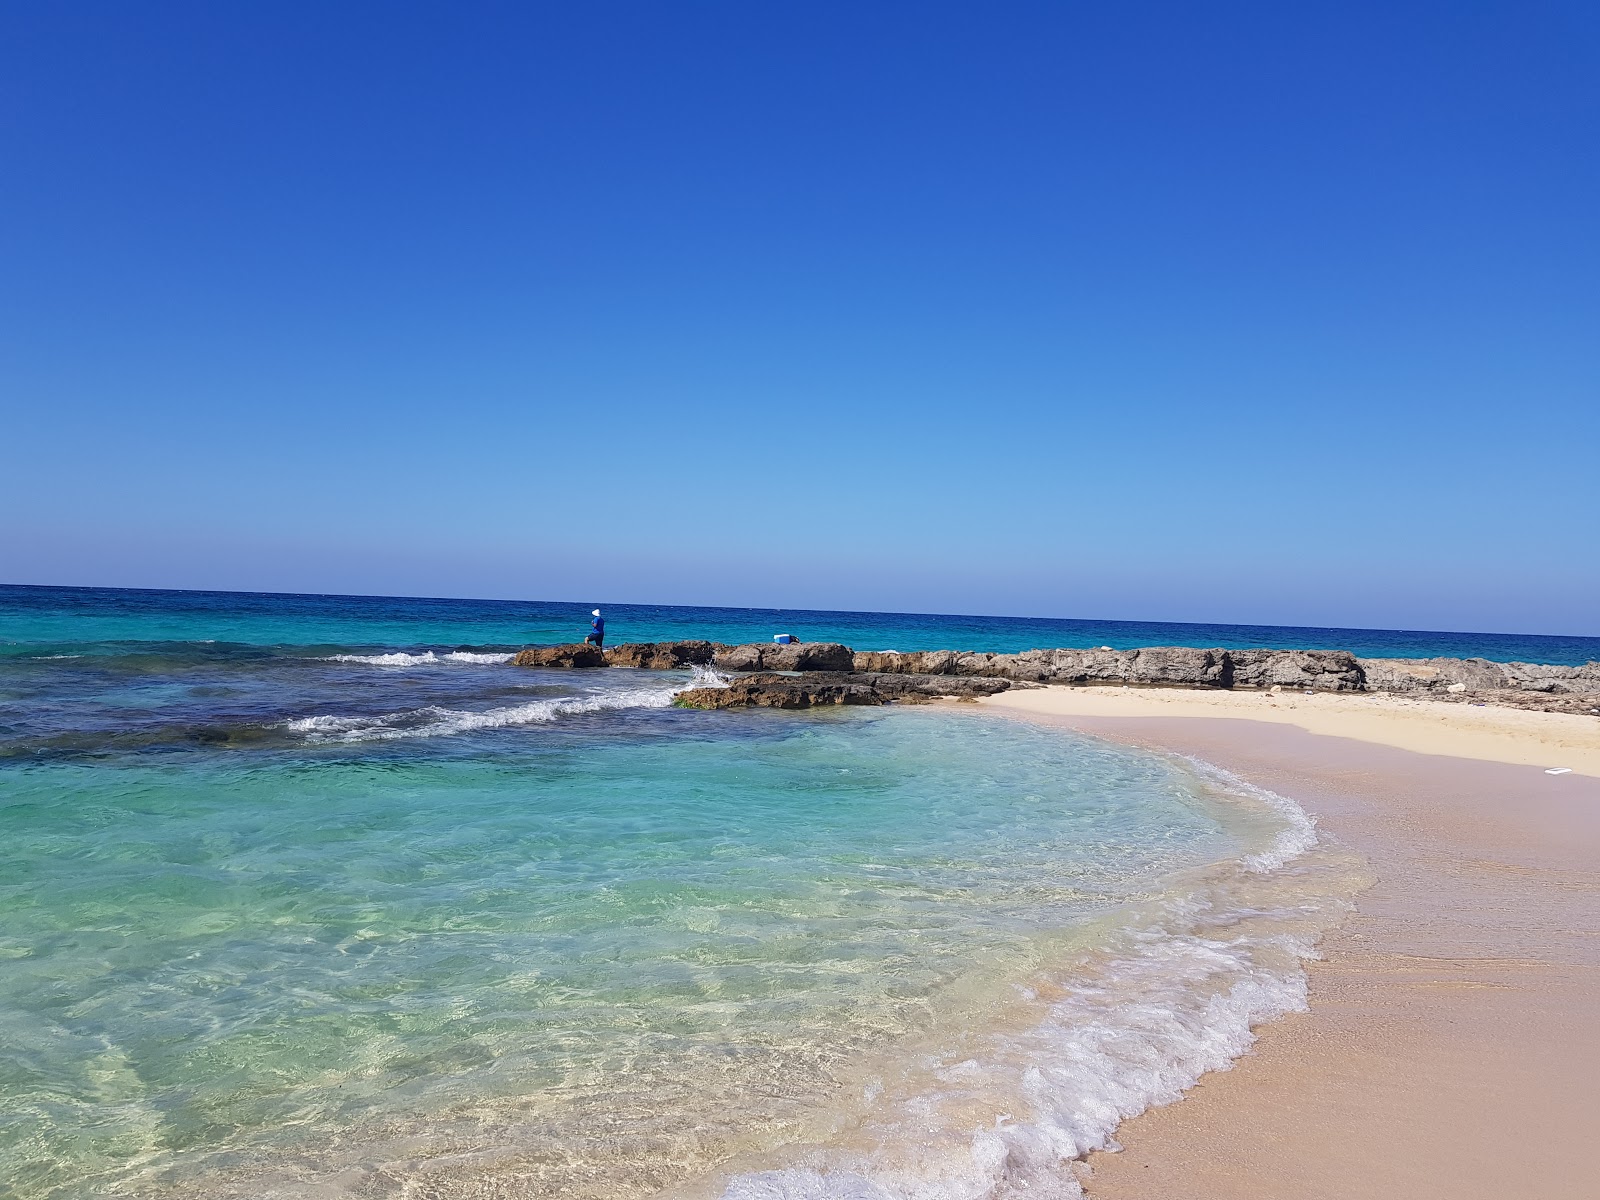 Fotografie cu Minaa Alhasheesh beach cu plajă spațioasă